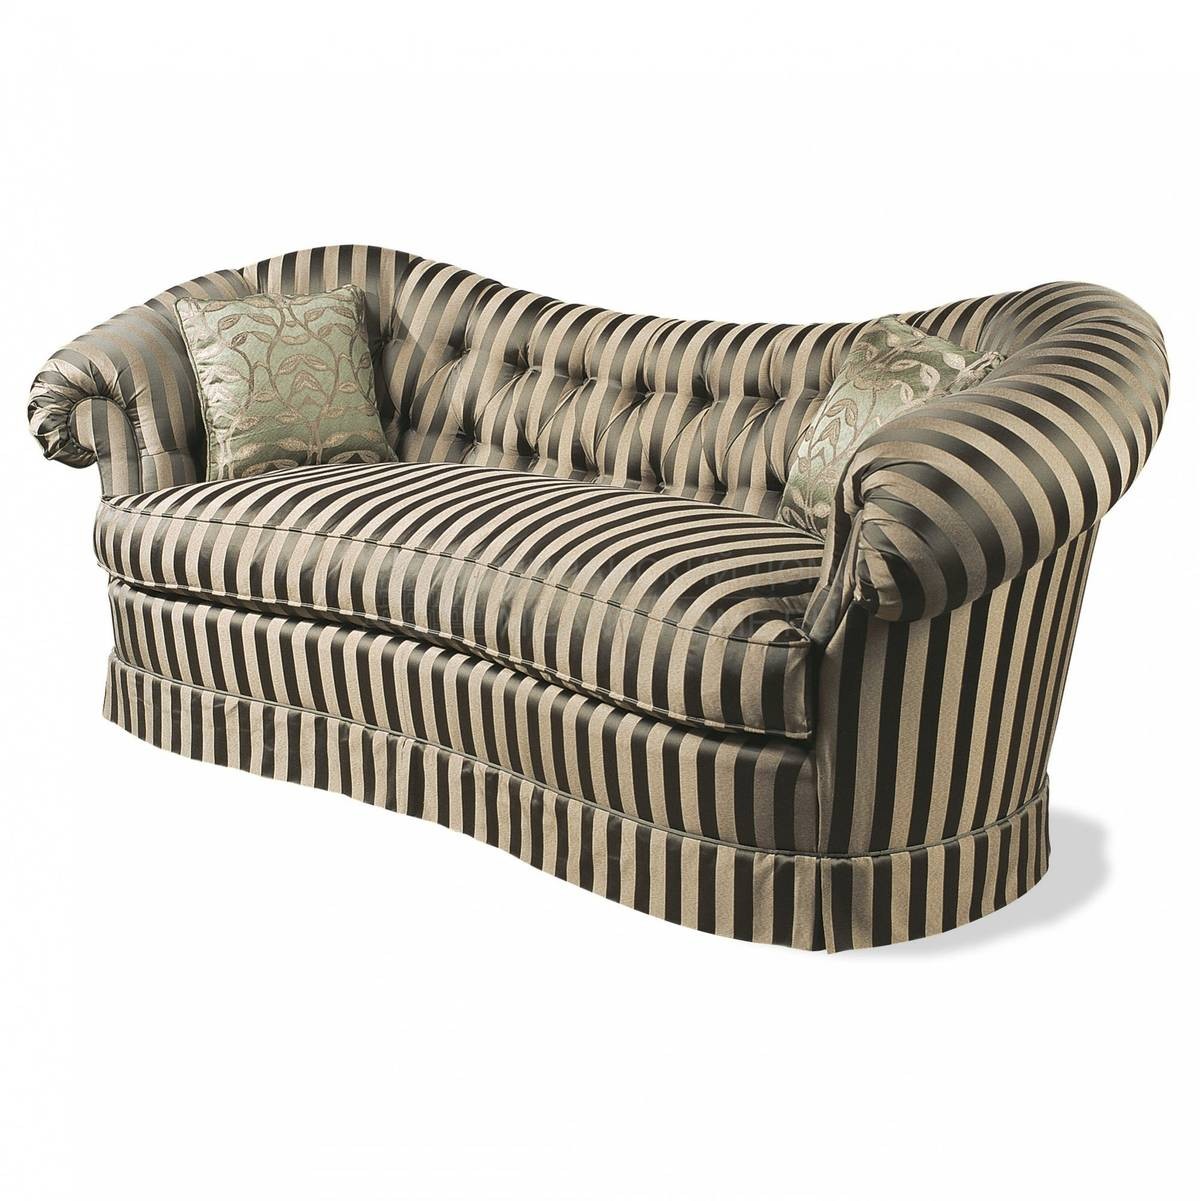 Прямой диван The Upholstery/D402 из Италии фабрики FRANCESCO MOLON